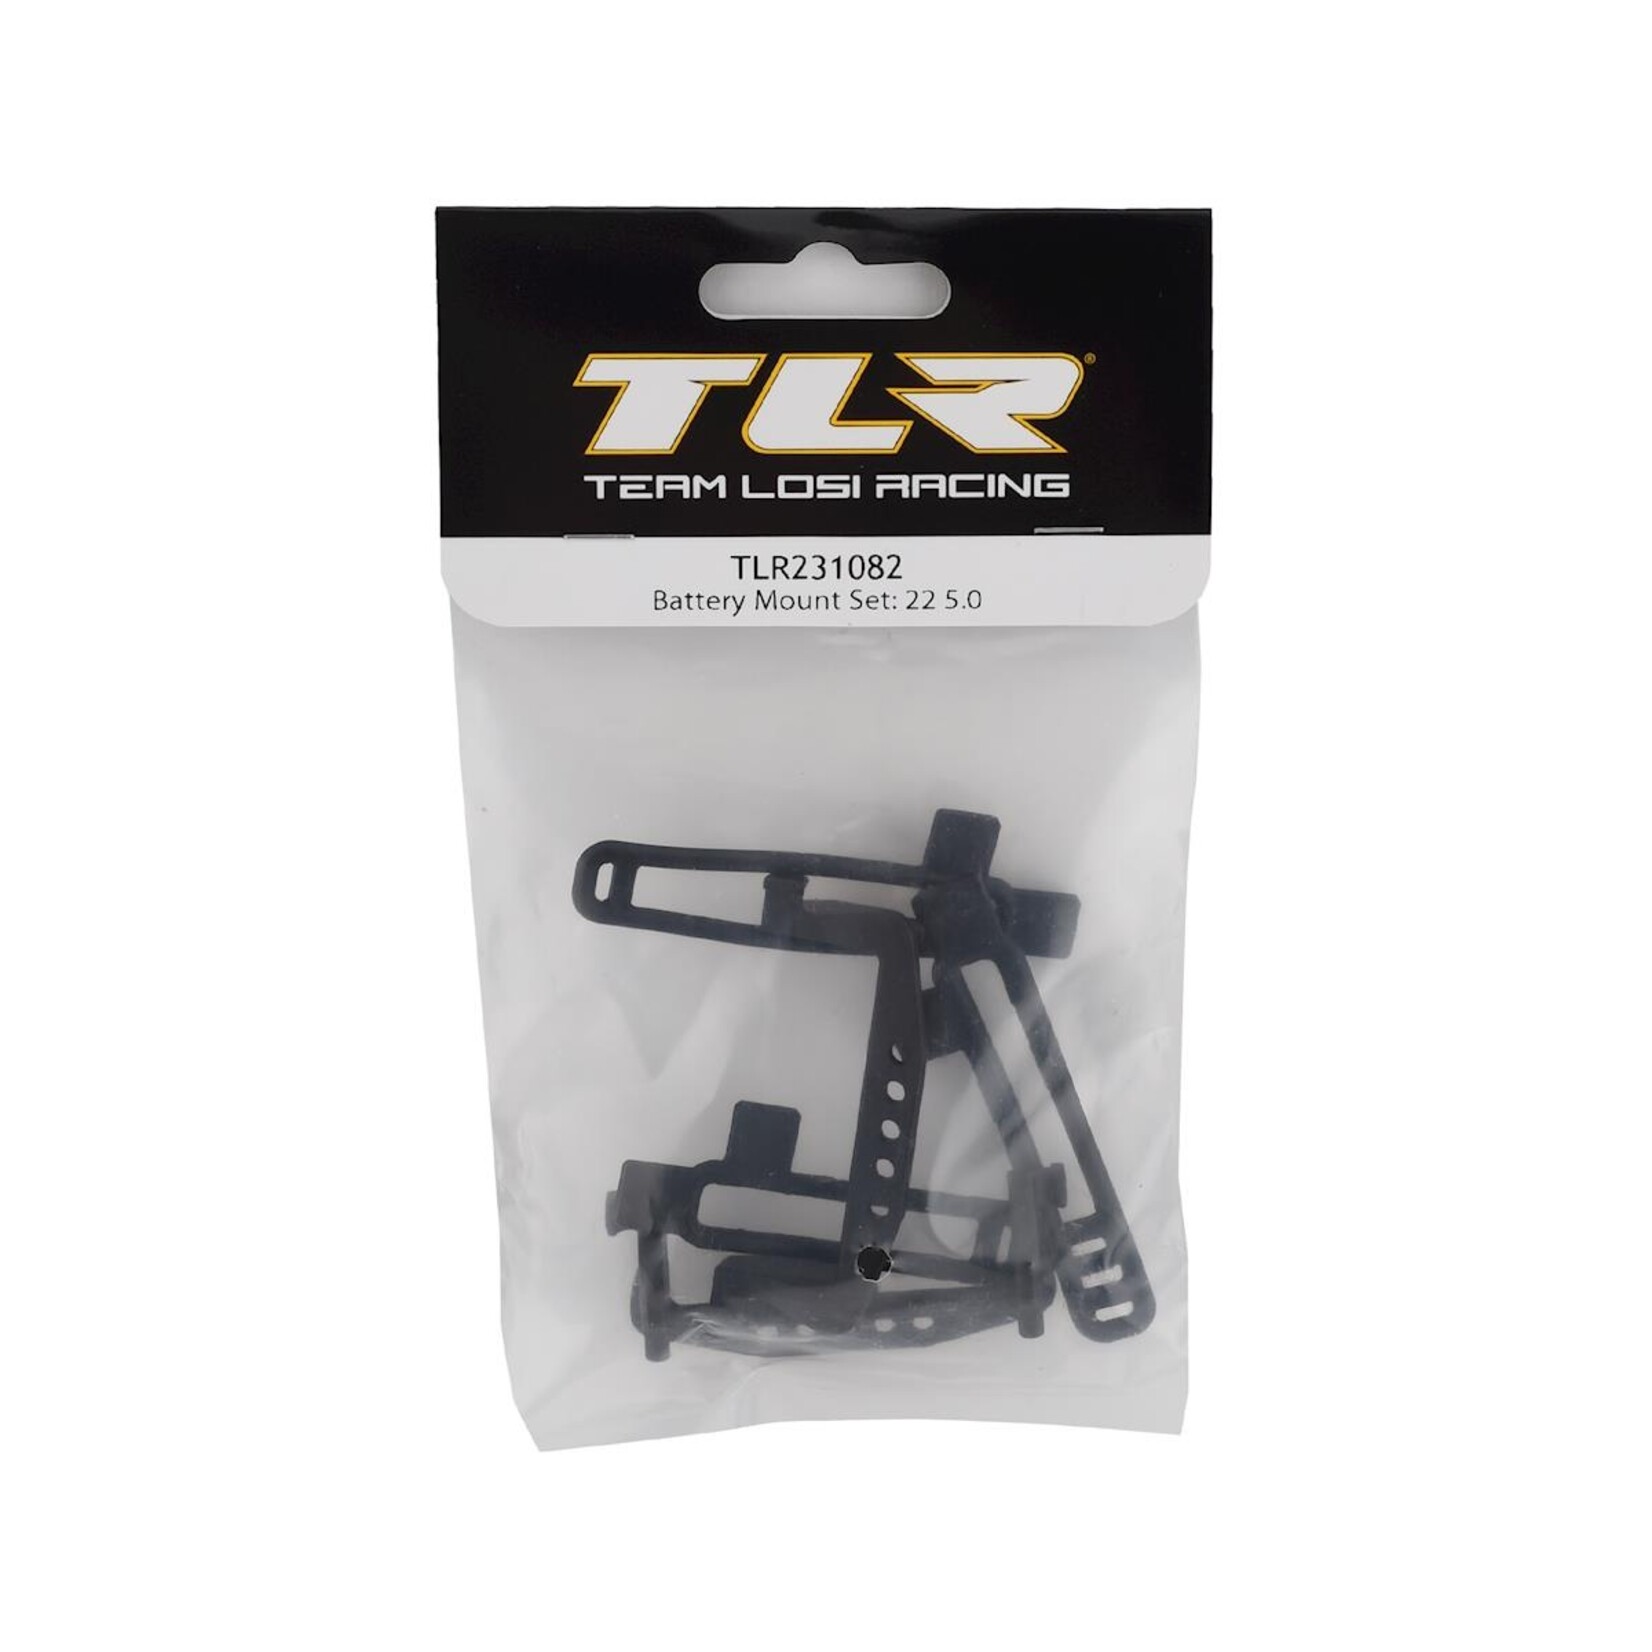 TLR Team Losi Racing 22 5.0 Battery Mount Set #TLR231082